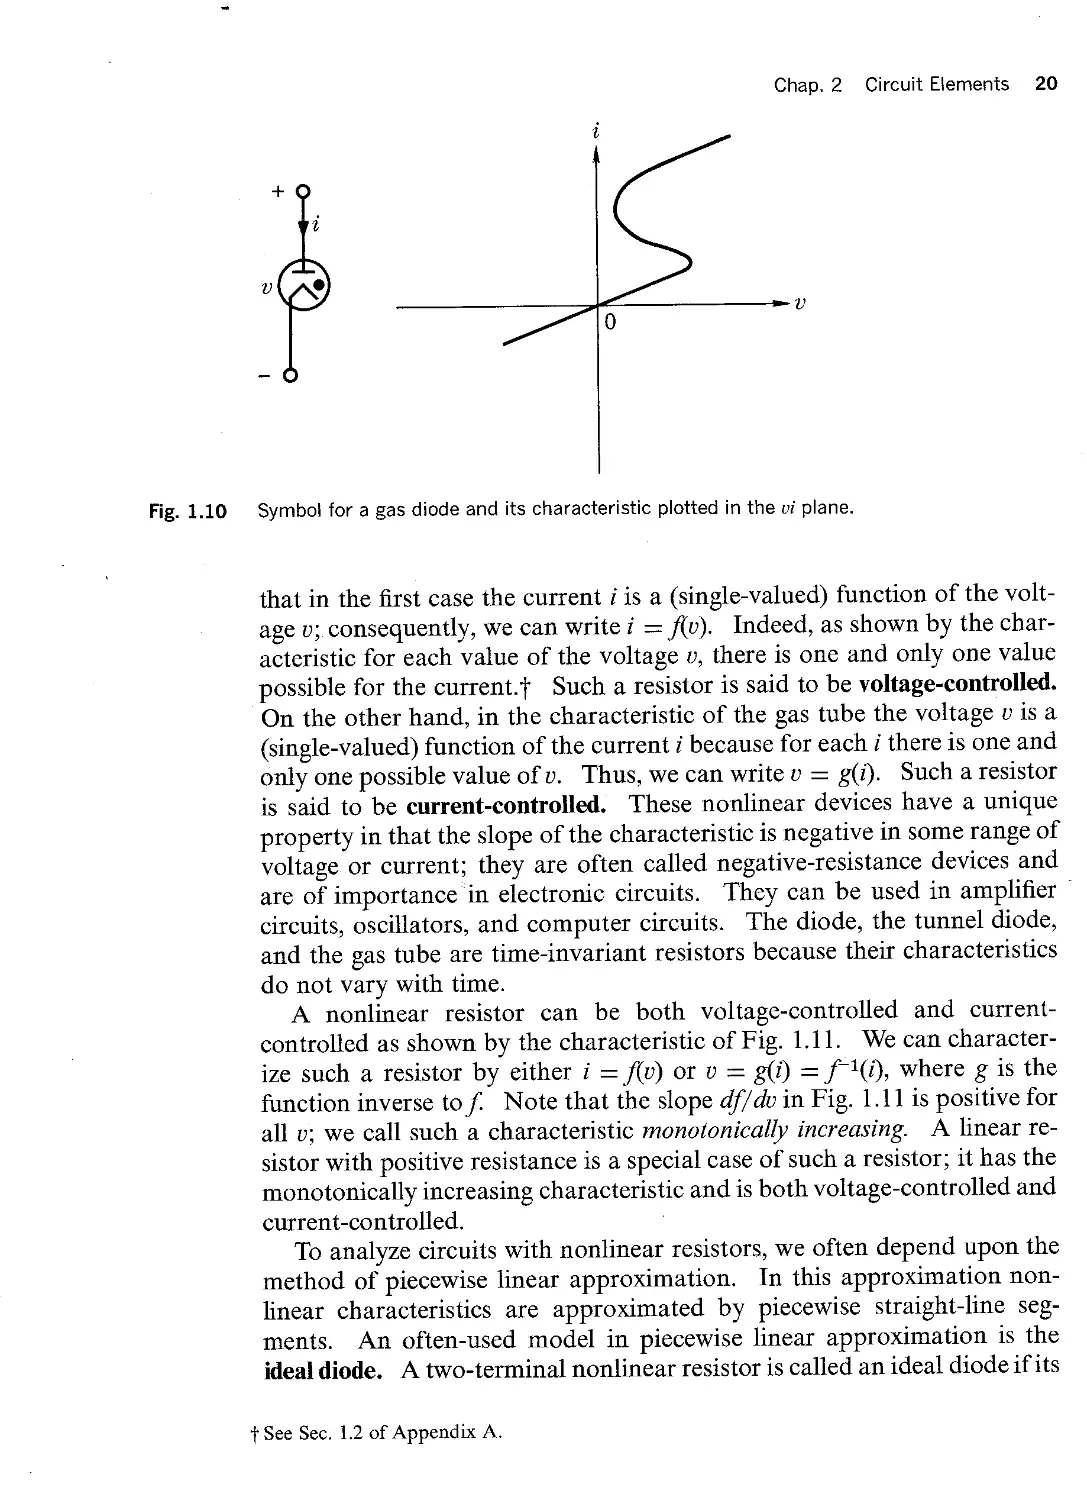 2.3 - Properties of the Loop Impedance Matrix